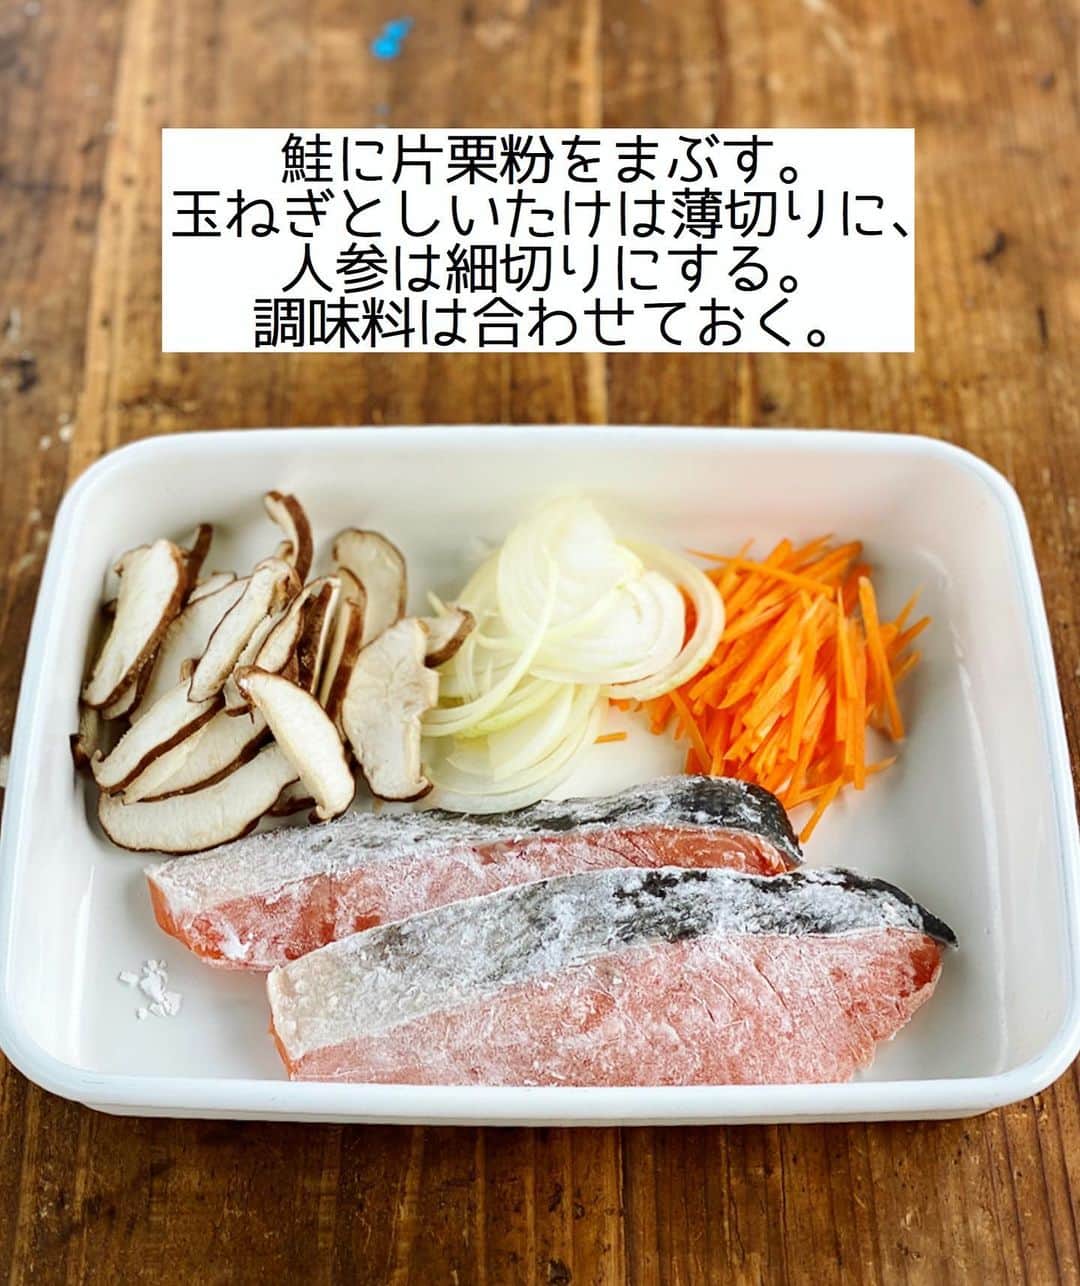 Mizuki【料理ブロガー・簡単レシピ】さんのインスタグラム写真 - (Mizuki【料理ブロガー・簡単レシピ】Instagram)「・﻿ 【#レシピ 】ーーーーーー﻿ ♡鮭の野菜あんかけ♡﻿ (2品献立提案あり)﻿ ーーーーーーーーーーーー﻿ ﻿ ﻿ ﻿ おはようございます(*^^*)﻿ ﻿ 昨日は#まる得マガジン をご覧下さり﻿ ありがとうございました🙇‍♀️﻿ 昨夜の［基本のパンケーキ］に続き﻿ 今夜はクッキーとスコーンです🍪﻿ これからアレンジが広がりますので﻿ よかったらご覧下さいね☺️💗﻿ ﻿ ﻿ ﻿ ﻿ さて、レシピです📕﻿ ﻿ 今日は秋色おかず☆﻿ ［鮭の野菜あんかけ］のご紹介です♩﻿ ﻿ フライパンで焼いた鮭に﻿ 野菜たっぷりの和風あんをかけました♡﻿ バランスよく食べられて﻿ ボリュームもアップしますよ〜(*´艸`)﻿ ﻿ フライパンひとつでできるので﻿ お気軽にお試し下さいね(*^^*)﻿ ﻿ ﻿ ﻿ ＿＿＿＿＿＿＿＿＿＿＿＿＿＿＿＿＿＿＿＿﻿ 【2人分】﻿ 生鮭...2切れ﻿ 片栗粉...適量﻿ 玉ねぎ...1/4個﻿ 人参...1/4本﻿ しいたけ...2枚﻿ サラダ油...大1﻿ ●水...150ml﻿ ●醤油・みりん...各大1.5﻿ ●片栗粉...小2﻿ ●和風だし...小1/4﻿ 万能ねぎ...適量﻿ ﻿ 1.鮭に片栗粉をまぶす。玉ねぎとしいたけは薄切りに、人参は細切りにする。●は合わせておく。﻿ 2.フライパンにサラダ油を中火で熱し、鮭を両面焼く。火が通ったら器に盛り付ける。﻿ 3.そのままのフライパンを中火で熱し、1の野菜を炒める。しんなりしたら●をもう一度混ぜてから加え、混ぜながらとろみをつける。﻿ 4.2に3をかけ、小口切りにしたねぎをのせる。﻿ ￣￣￣￣￣￣￣￣￣￣￣￣￣￣￣￣￣￣￣￣﻿ ﻿ ﻿ ﻿ 《ポイント》﻿ ♦︎野菜はアレンジOK♩長ねぎやしめじ、ピーマンなどもよく合います♩﻿ ﻿ ﻿ ﻿ ﻿ ﻿ ﻿ ＿＿＿＿＿＿＿＿＿＿＿＿＿＿＿﻿ 🥣🥣🥣2品献立提案🥣🥣🥣﻿ ￣￣￣￣￣￣￣￣￣￣￣￣￣￣￣﻿ 【合間に作れるおすすめ副菜】﻿ >厚揚げのねぎおかかチーズ(P.86)﻿ >ブロッコリーと卵のおかかマヨ和え(P.93)﻿ (#Mizukiの2品献立 より)﻿ ﻿ 【献立の段取り】﻿ 副菜の加熱を始めてから、メインを焼く🥢﻿ ﻿ ﻿ ﻿ ﻿ ﻿ ﻿ ﻿ ⭐️発売中⭐️3刷重版が決まりました😭﻿ 本当にありがとうございます(涙)﻿ _____________________________________﻿ \15分でいただきます/﻿ 📕#Mizukiの2品献立 📕﻿ (9月24日発売・マガジンハウス)﻿ ￣￣￣￣￣￣￣￣￣￣￣￣￣￣￣￣￣﻿ ﻿ 忙しい私たちには﻿ 2品くらいがちょうどいい！﻿ 『しんどくない献立、考えました』﻿ ￣￣￣￣￣￣￣￣￣￣￣￣￣￣￣￣﻿ ﻿ ーーーーーPART.1 ーーーーー﻿ 【Mizukiのお墨つき！２品献立ベスト10】﻿ 約15分でできる10献立をご紹介！﻿ メインは全部フライパン、副菜はレンチンor混ぜるだけ♡﻿ ﻿ ーーーーーPART.2 ーーーーー﻿ 【フライパンひとつ！今夜のメインおかず】﻿ 献立の主役になる肉や魚のおかず50品！﻿ Part3の副菜と組み合わせれば﻿ 献立のバリエーションが広がりますよ♩﻿ ﻿ ーーーーー PART.3 ーーーーー﻿ 【合間に作れる！ 野菜別かんたん副菜】﻿ レンチンor和えるだけの副菜レシピを﻿ 素材別にたっぷり収録♩﻿ ﻿ ーーーーー番外編ーーーーー﻿ 【ひとつで満足！ご飯＆麺】﻿ 【具だくさん！おかずスープ】﻿ 【オーブンいらずのおやつレシピ】﻿ ￣￣￣￣￣￣￣￣￣￣￣￣￣￣￣￣￣￣﻿ (ハイライトにリンク🔗あります💗)﻿ ﻿ ﻿ ﻿ ﻿ ＿＿＿＿＿＿＿＿＿＿＿＿＿＿＿＿＿＿﻿ 🔔テレビ出演のお知らせ🔔﻿ 10月5日より2週間(月〜木)﻿ 【NHK Eテレ #まる得マガジン 】に﻿ 講師として出演させていただきます☺️﻿ 俳優の武田航平さん﻿ (@kouhei_takeda.official )と一緒に﻿ 絶品おやつから意外なランチまで﻿ たくさん作らせていただきますよ♩﻿ ﻿ ＊NHKテキスト発売中です📕﻿ ￣￣￣￣￣￣￣￣￣￣￣￣￣￣￣￣￣￣﻿ ﻿ ﻿ ﻿ ﻿ ﻿ レシピを作って下さった際や﻿ レシピ本についてのご投稿には﻿ タグ付け( @mizuki_31cafe )して﻿ お知らせいただけると嬉しいです😊💕﻿ ﻿ ﻿ ﻿ ﻿ ﻿ ﻿ #鮭#魚#野菜#あんかけ#Mizuki#簡単レシピ#時短レシピ#節約レシピ#料理#フーディーテーブル#マカロニメイト#おうちごはん#デリスタグラマー#料理好きな人と繋がりたい#料理記録#おうちごはんlover#写真好きな人と繋がりたい#foodpic#cooking#recipe#lin_stagrammer#foodporn#yummy#f52grams#鮭の和風あんかけm」10月6日 7時13分 - mizuki_31cafe